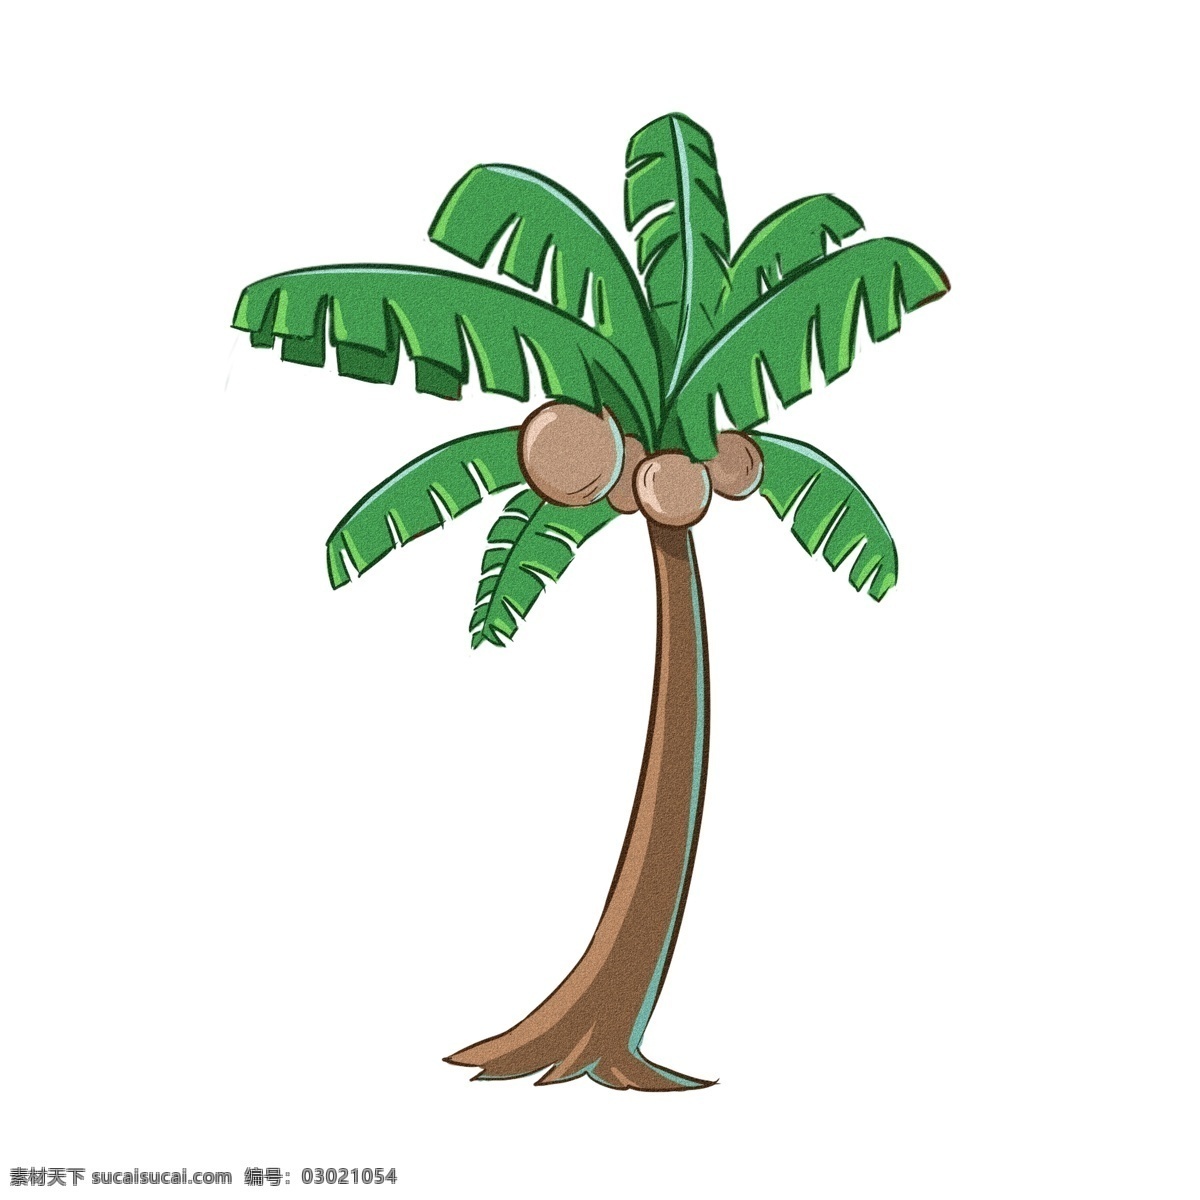 椰子树卡通 椰子树 卡通 手绘 可爱 绿色 夏日